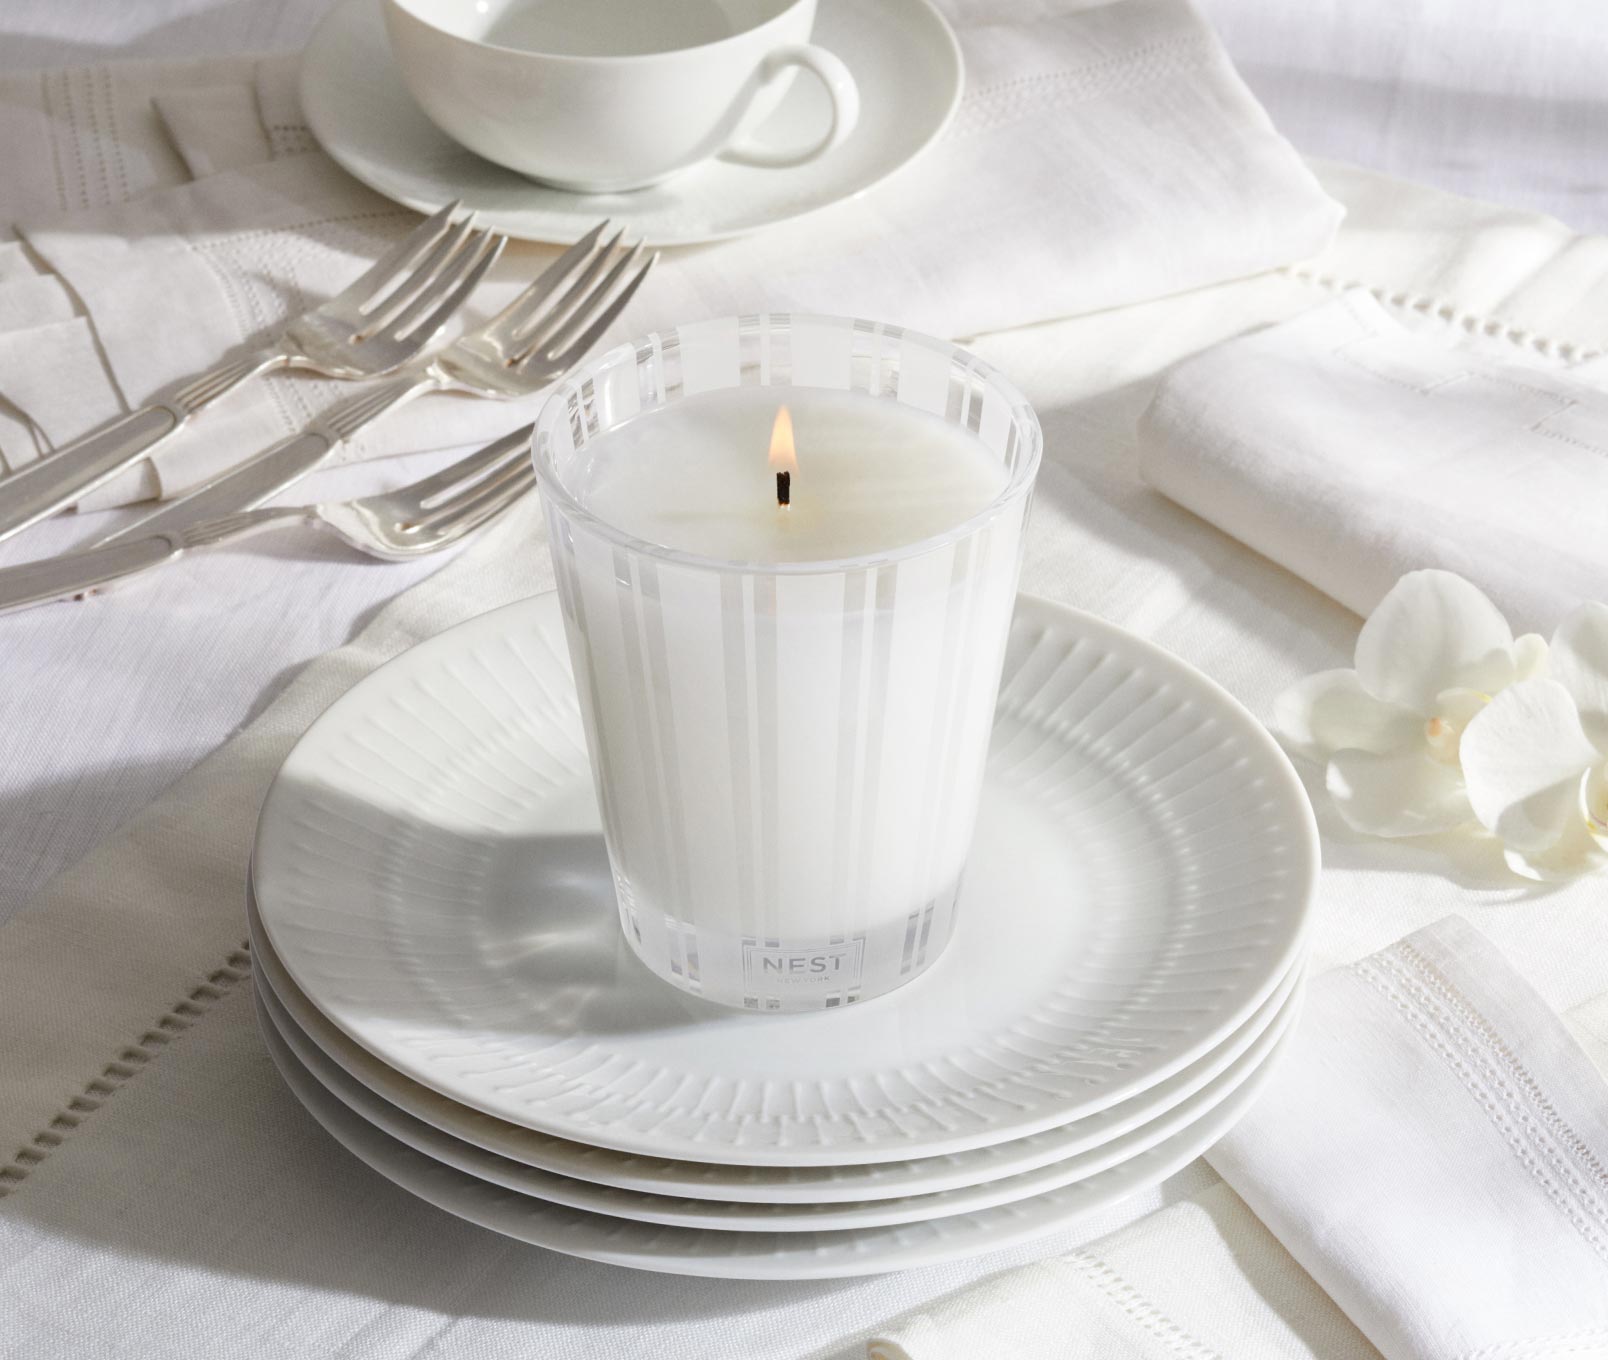 L'AVANT Fresh Linen Candle White